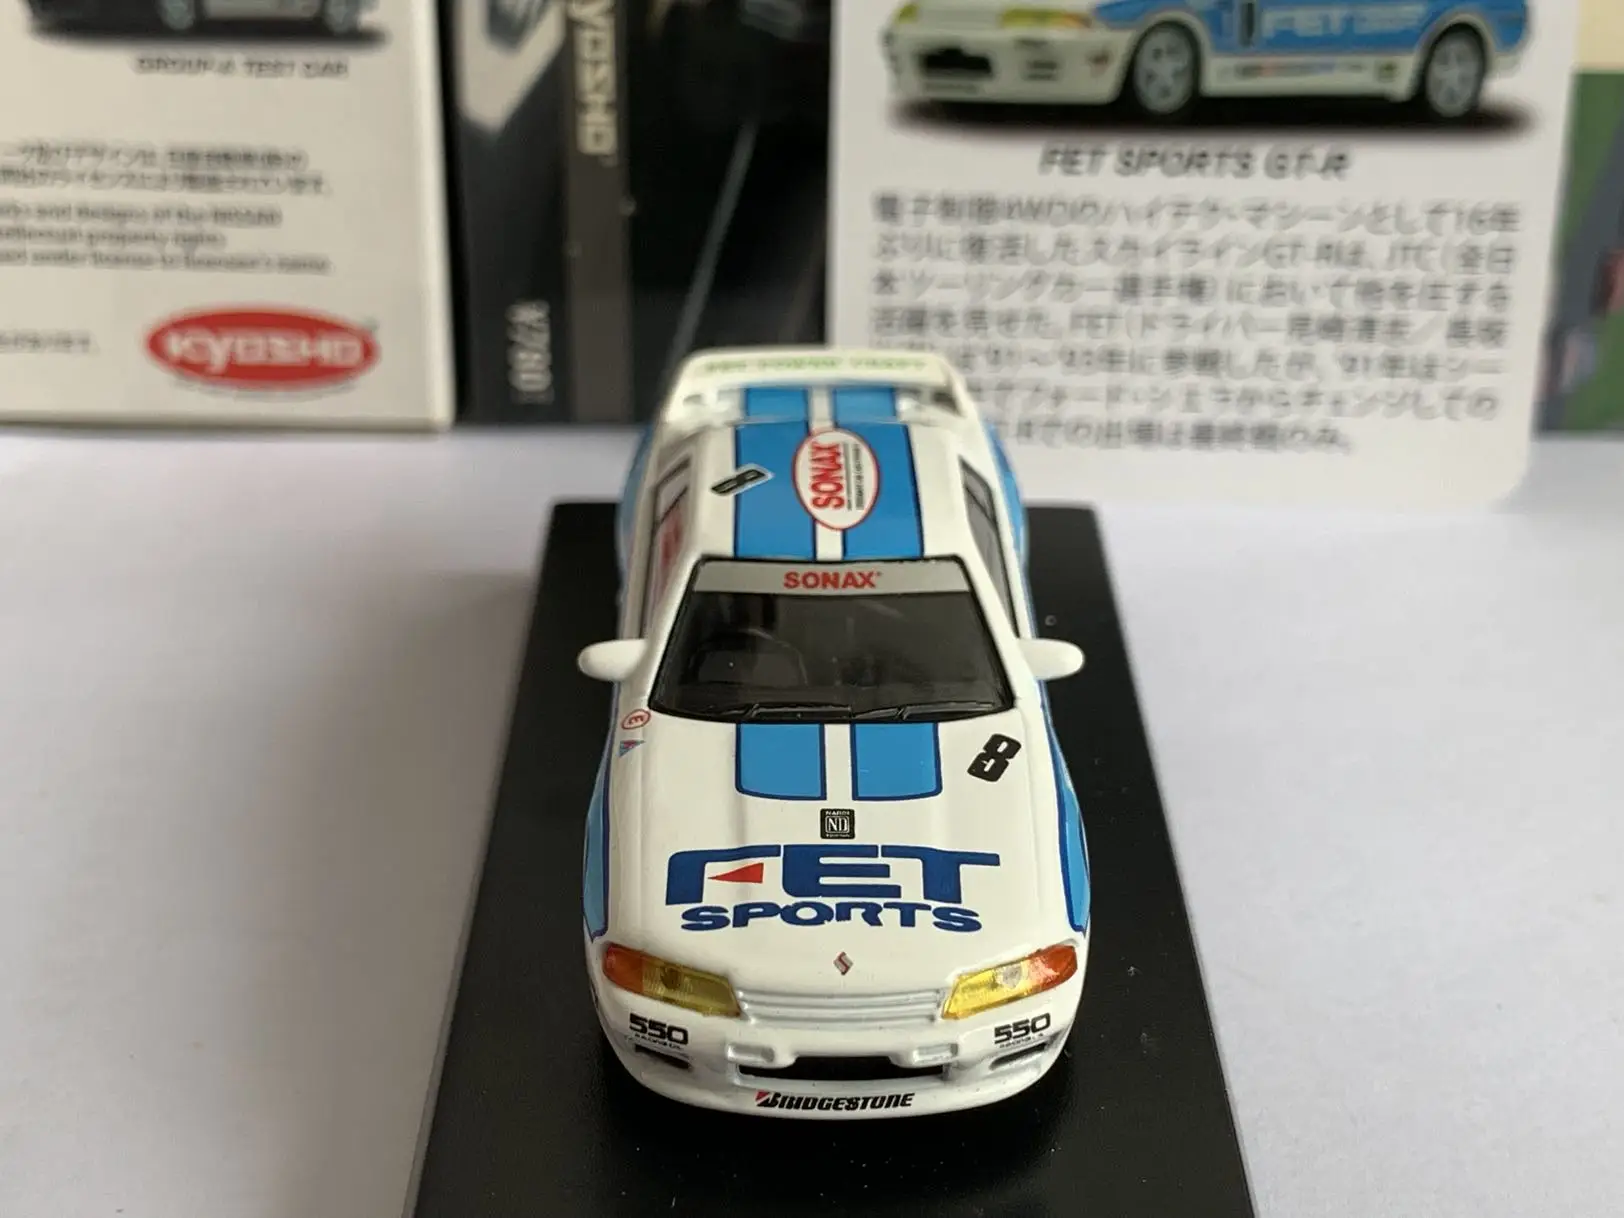 Kyosho 1/64 Nissan FET SPORTS GTR Коллекция детских игрушек для моделирования автомобилей из сплава, изготовленных методом литья под давлением 2